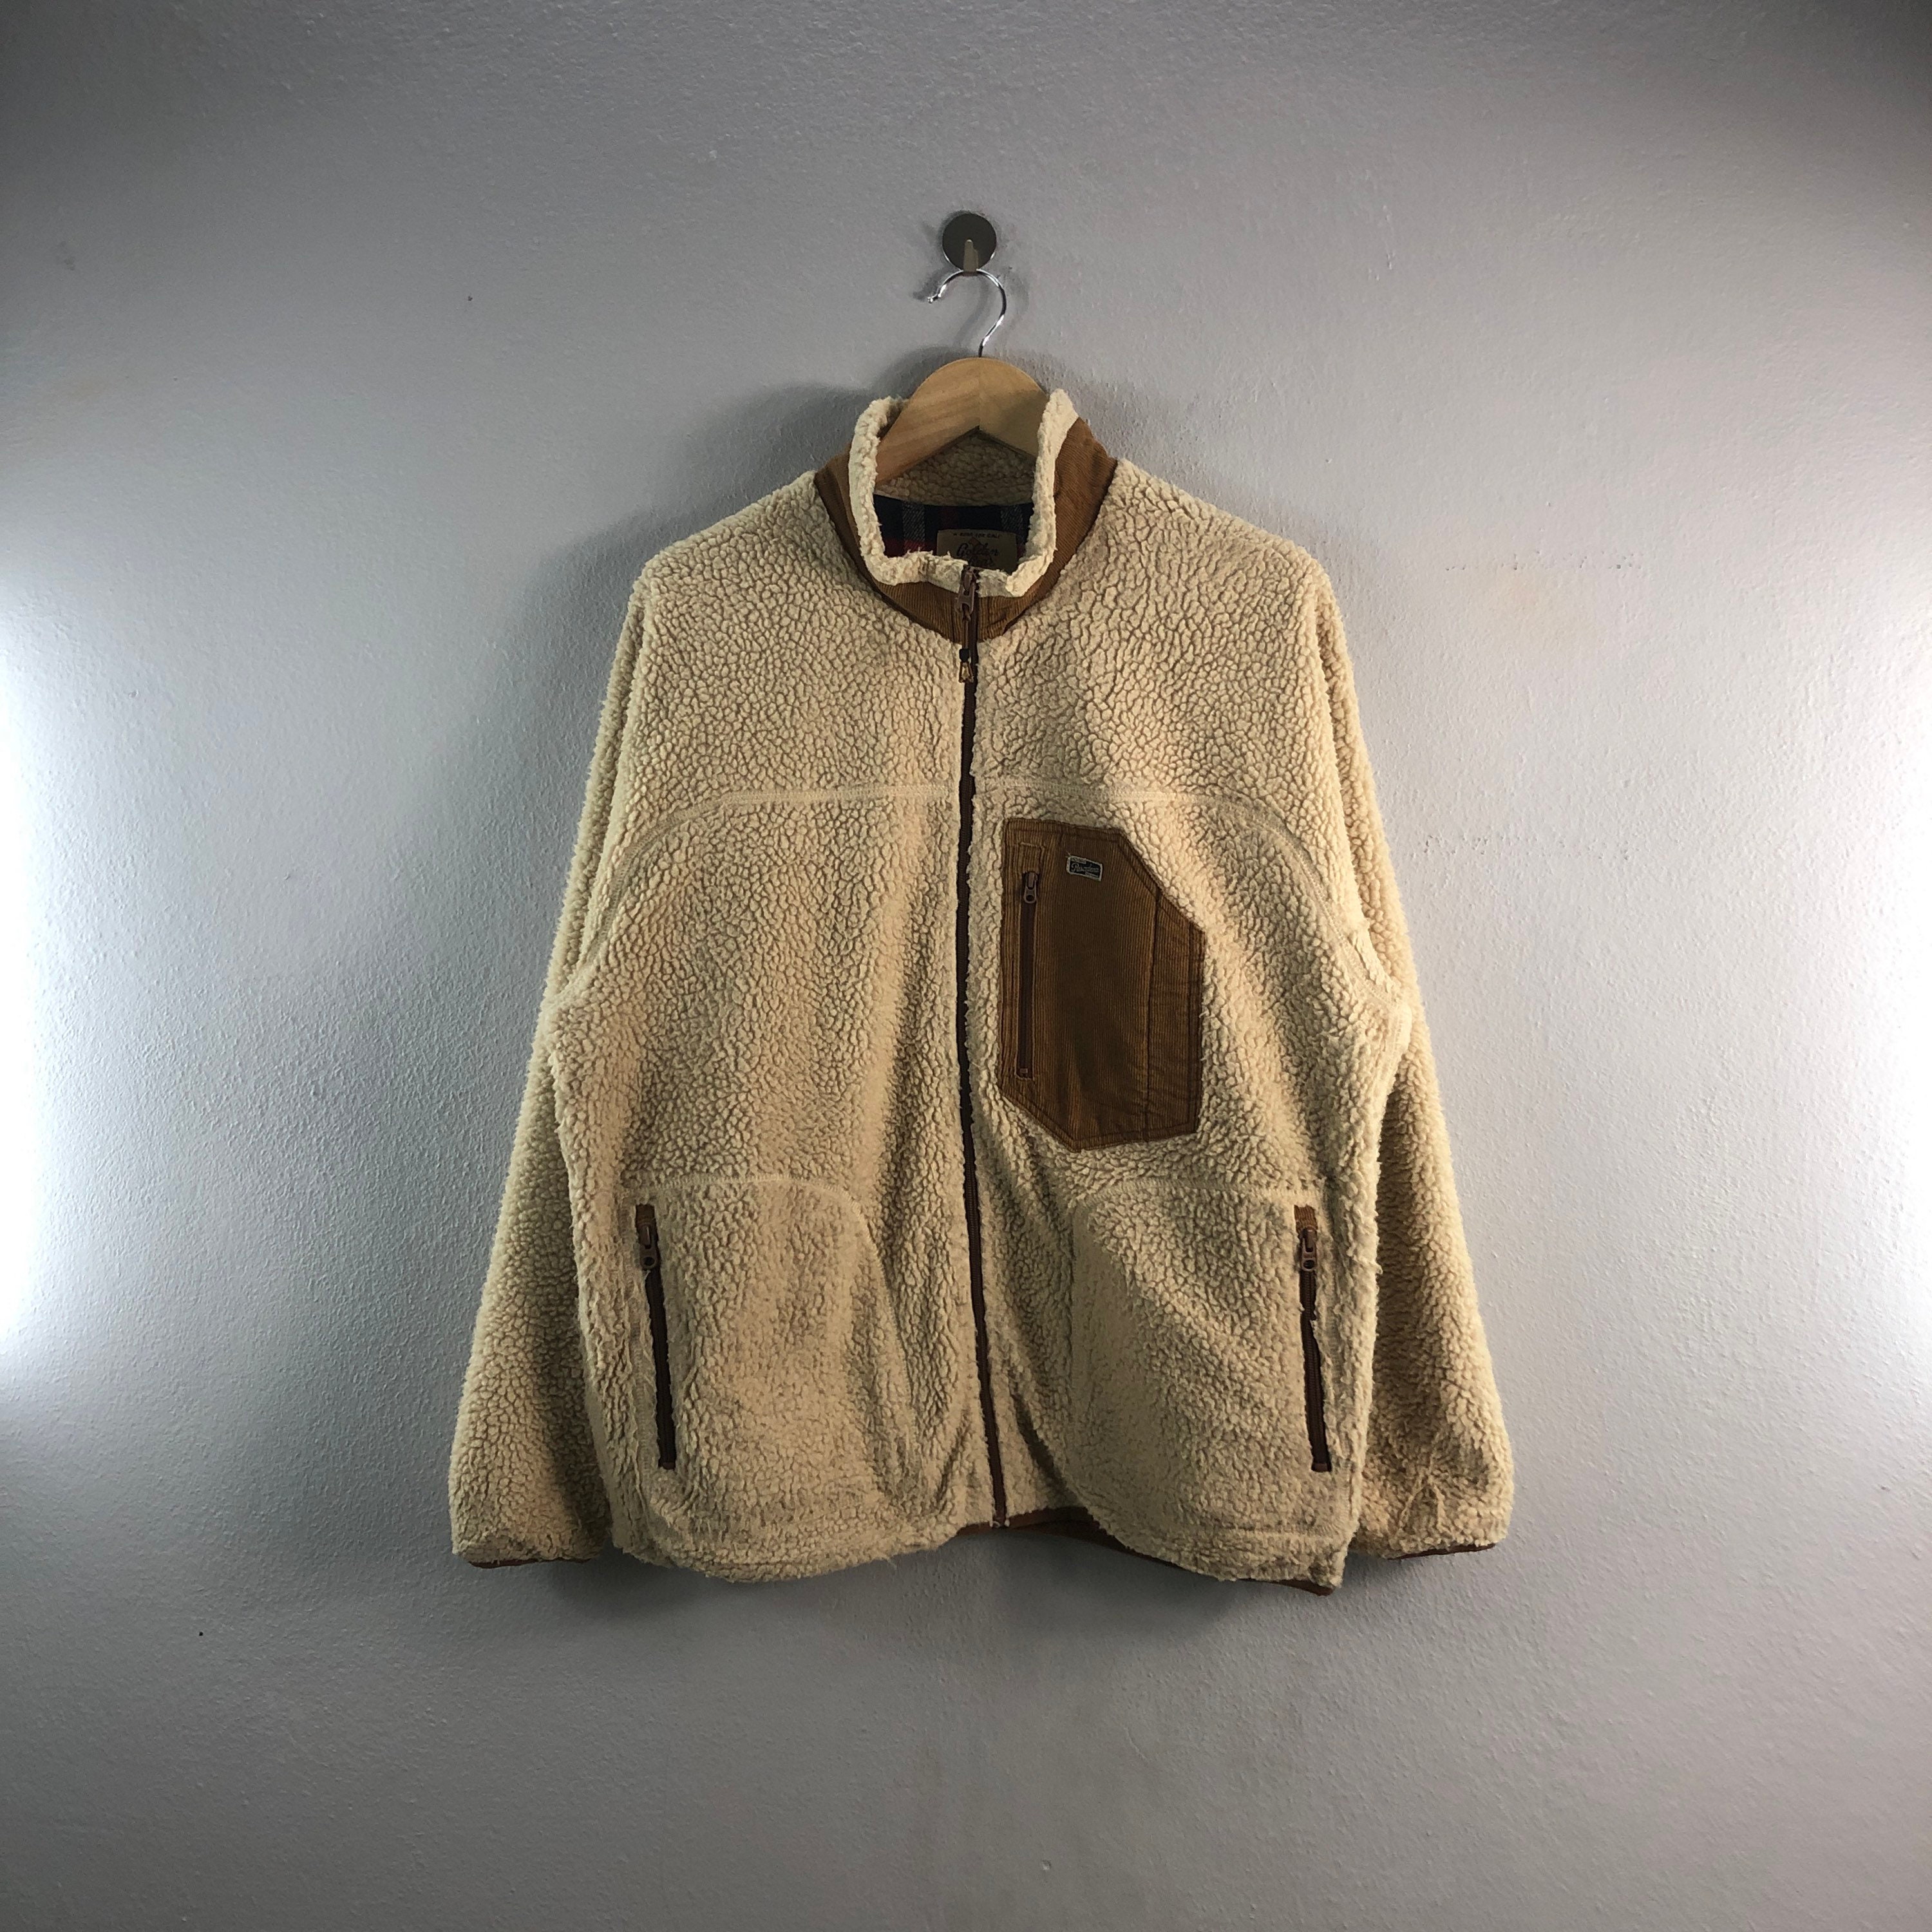 Forest/Black Classic Fit Varsity Jacket – Golden Bear Sportswear